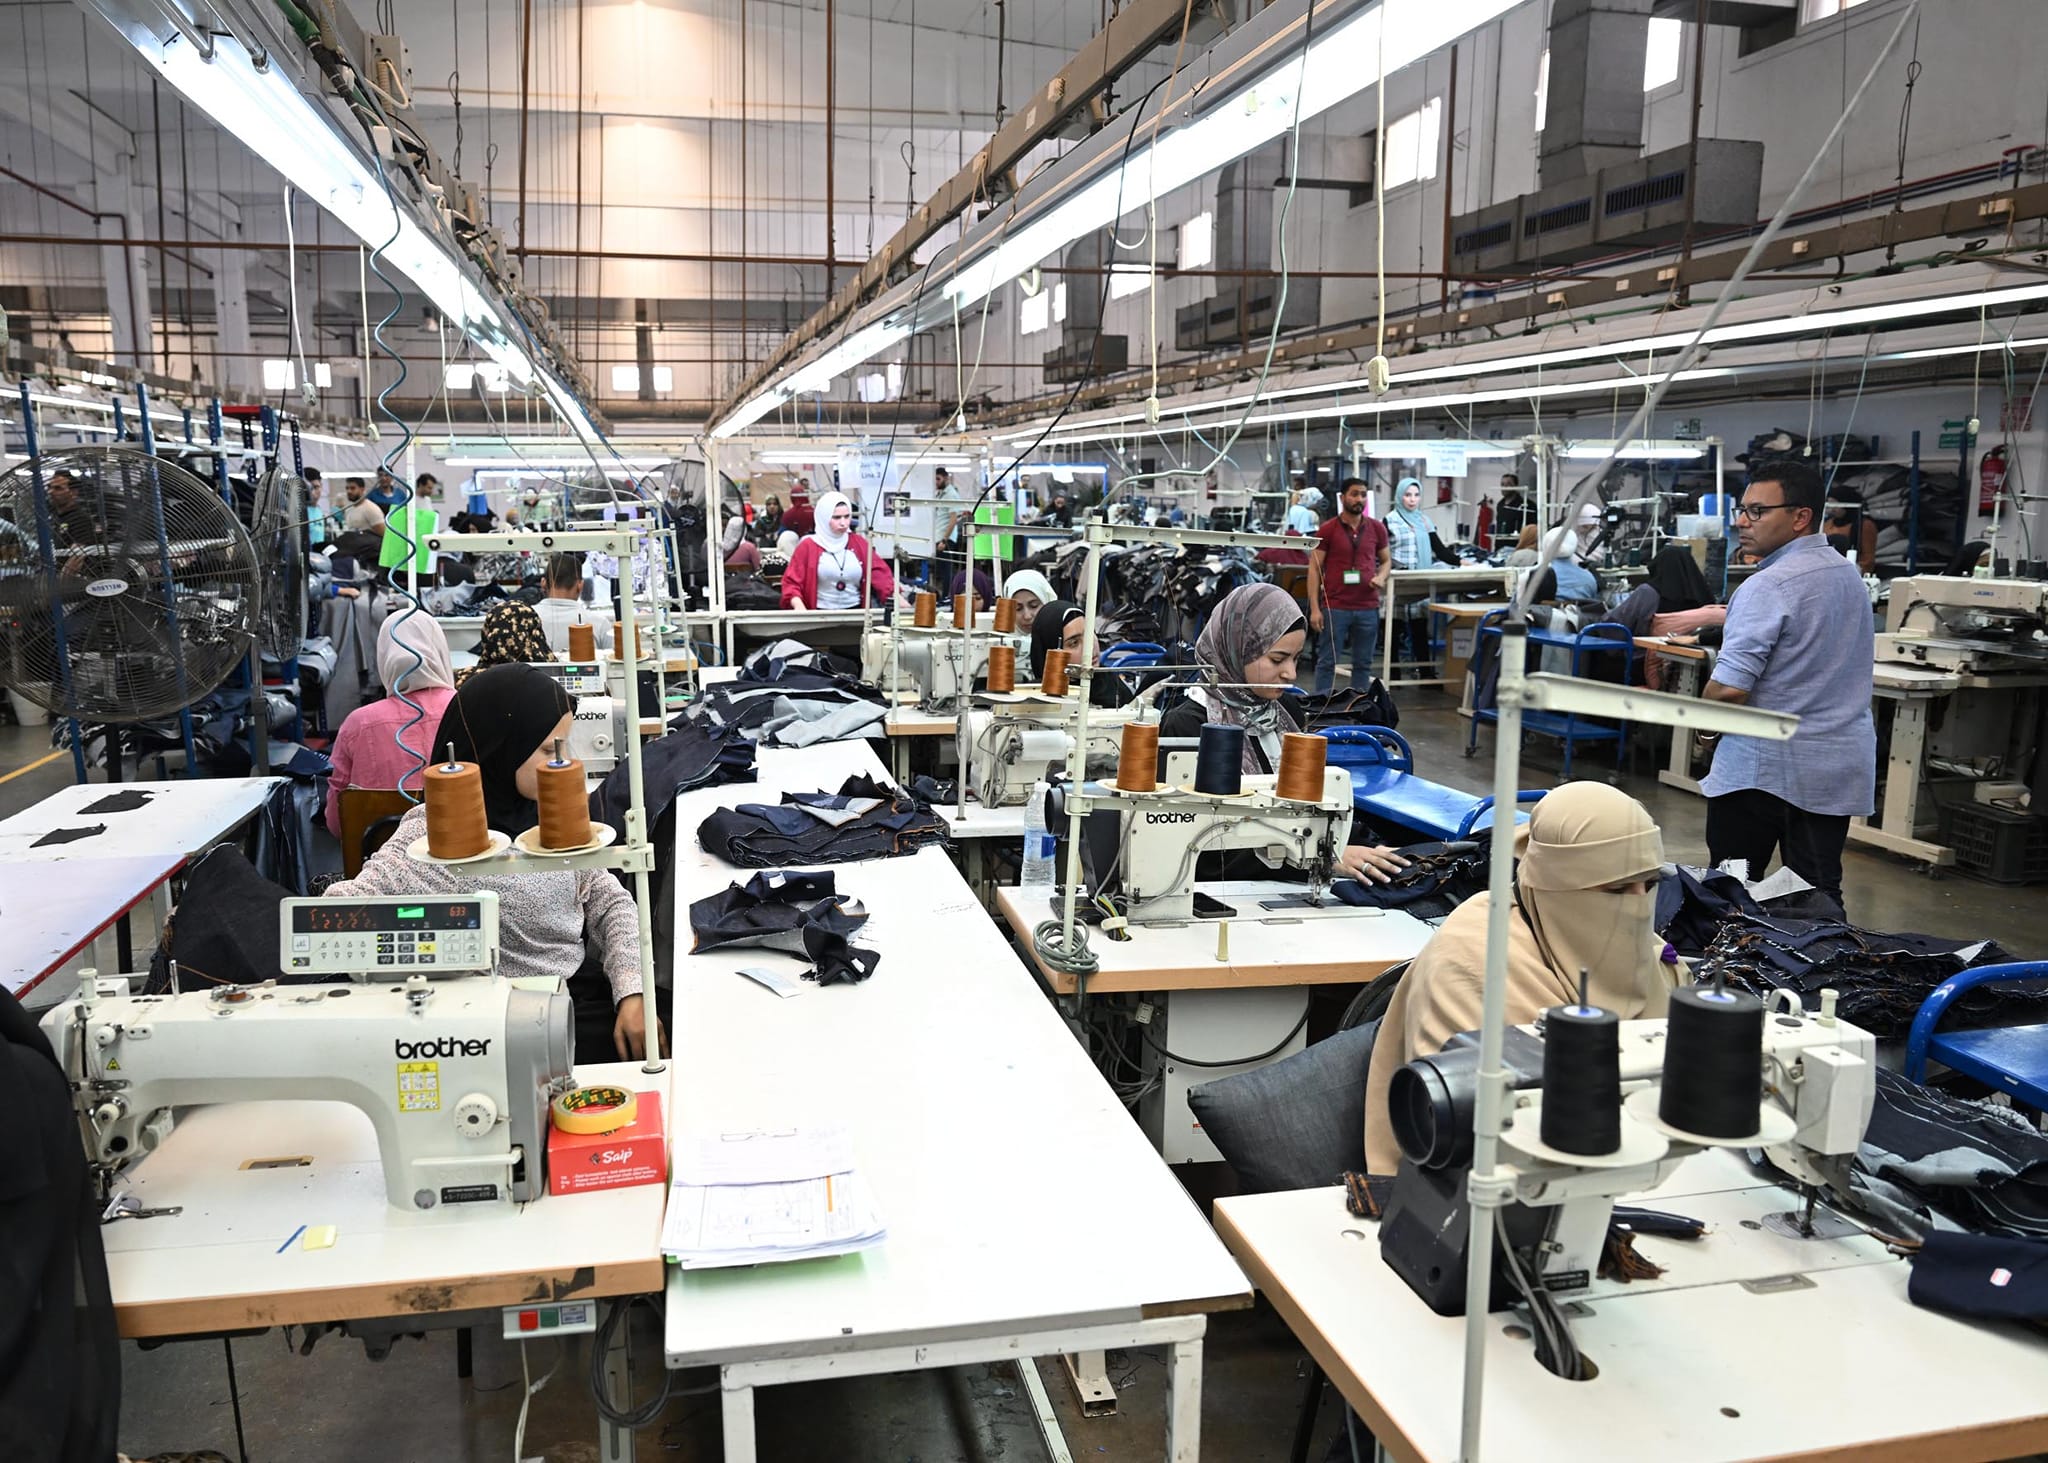 سير العمل في مصنع دينيم للملابس الجاهزة في بياض العرب